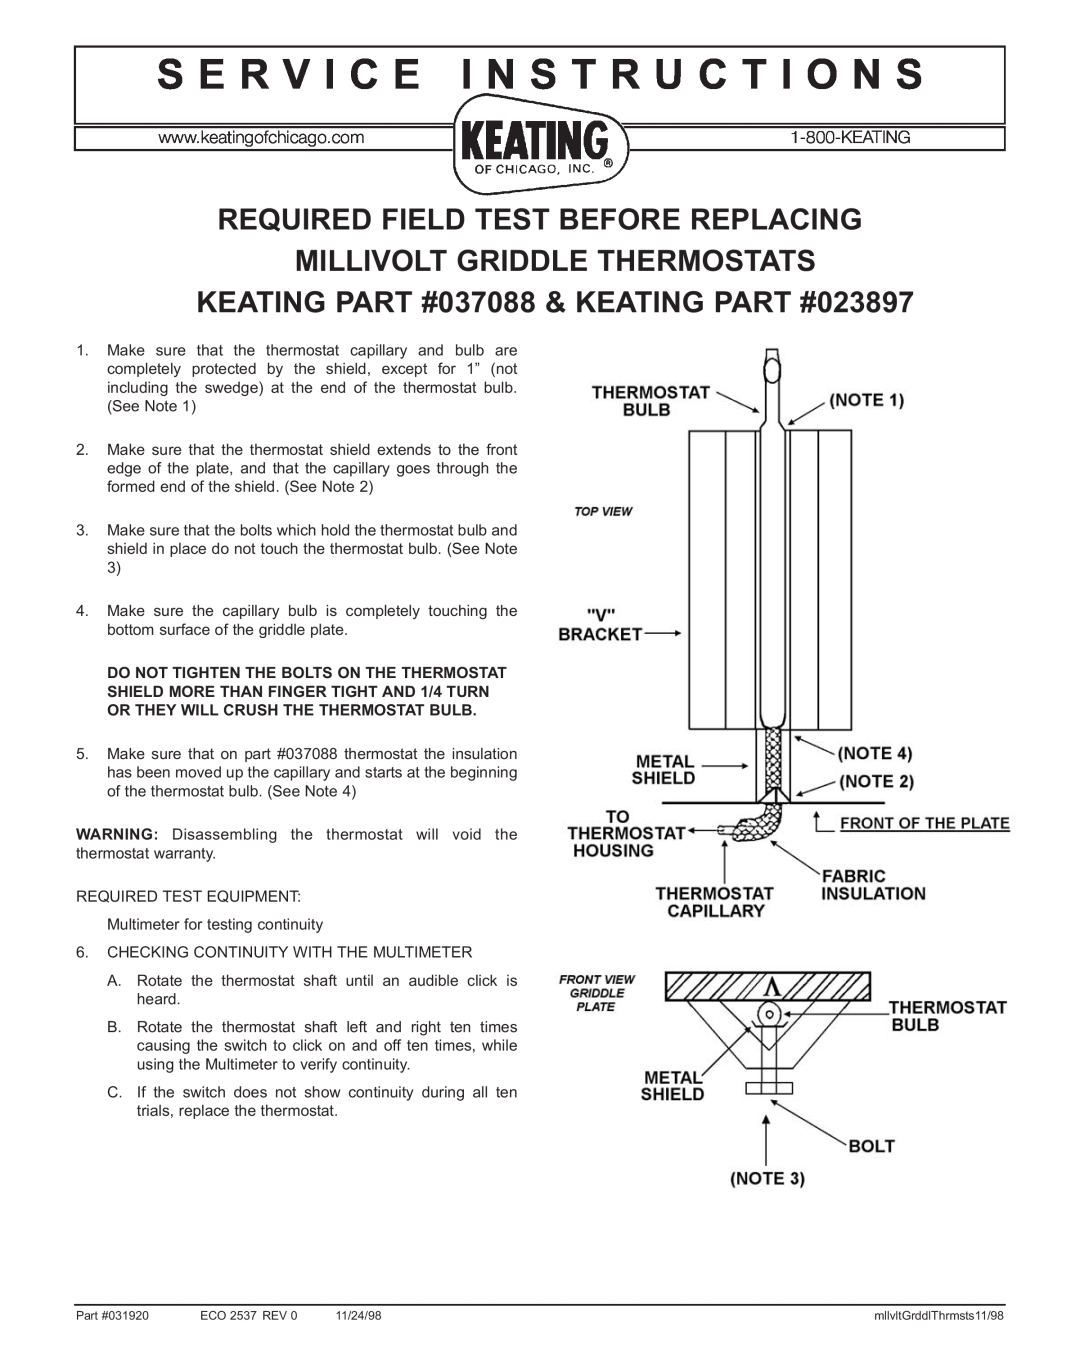 Keating Of Chicago 031920, 037088 warranty S E R V I C E I N S T R U C T I O N S, Required Field Test Before Replacing 